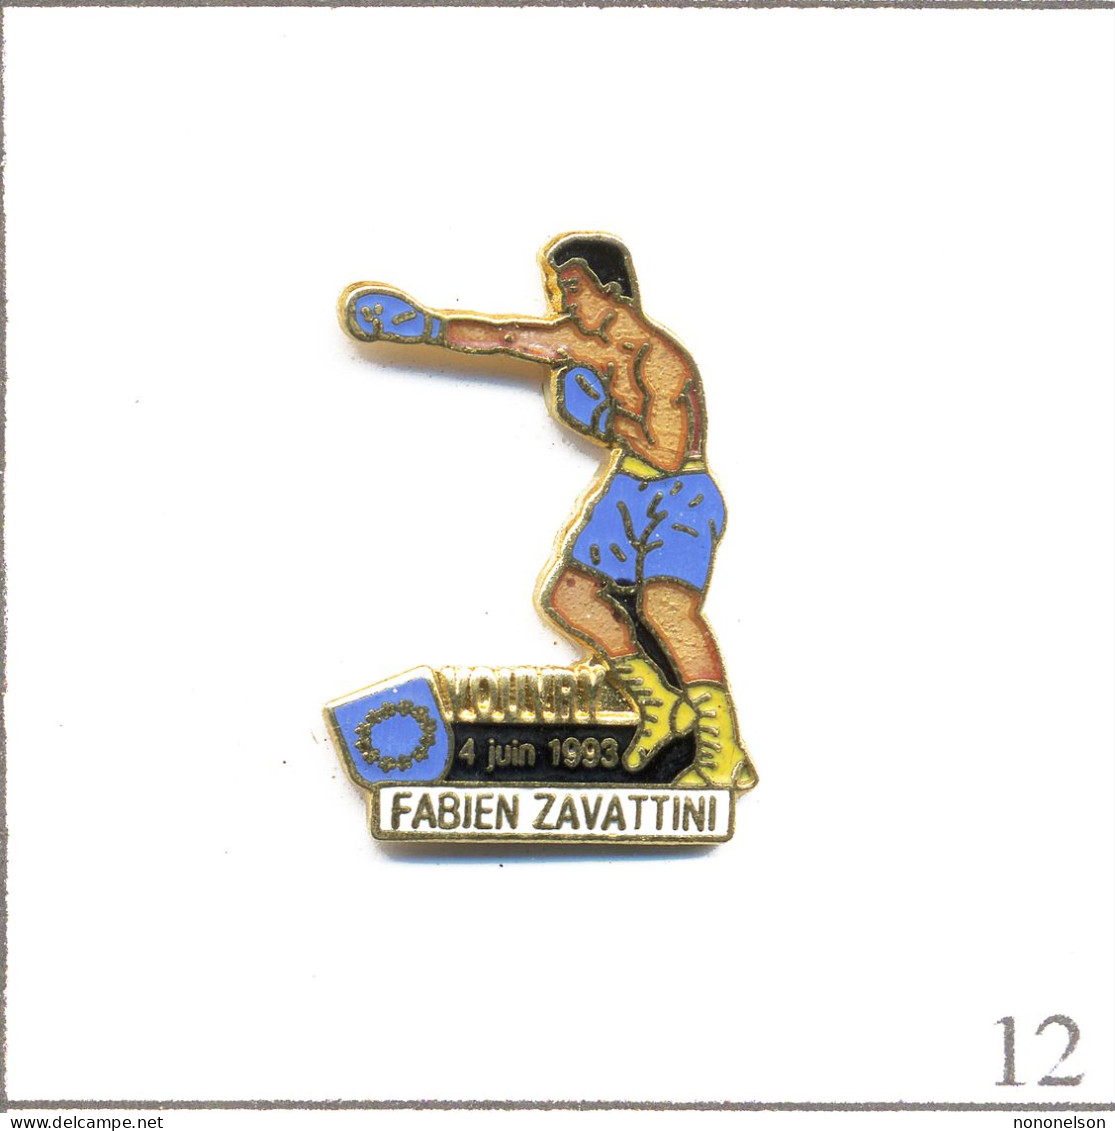 Pin's Sport - Boxe / Fabien Zavattini à Vouvry (Suisse) Le 4 Juin 1993. Estampillé Propin’s. EGF. T972-12 - Boxing